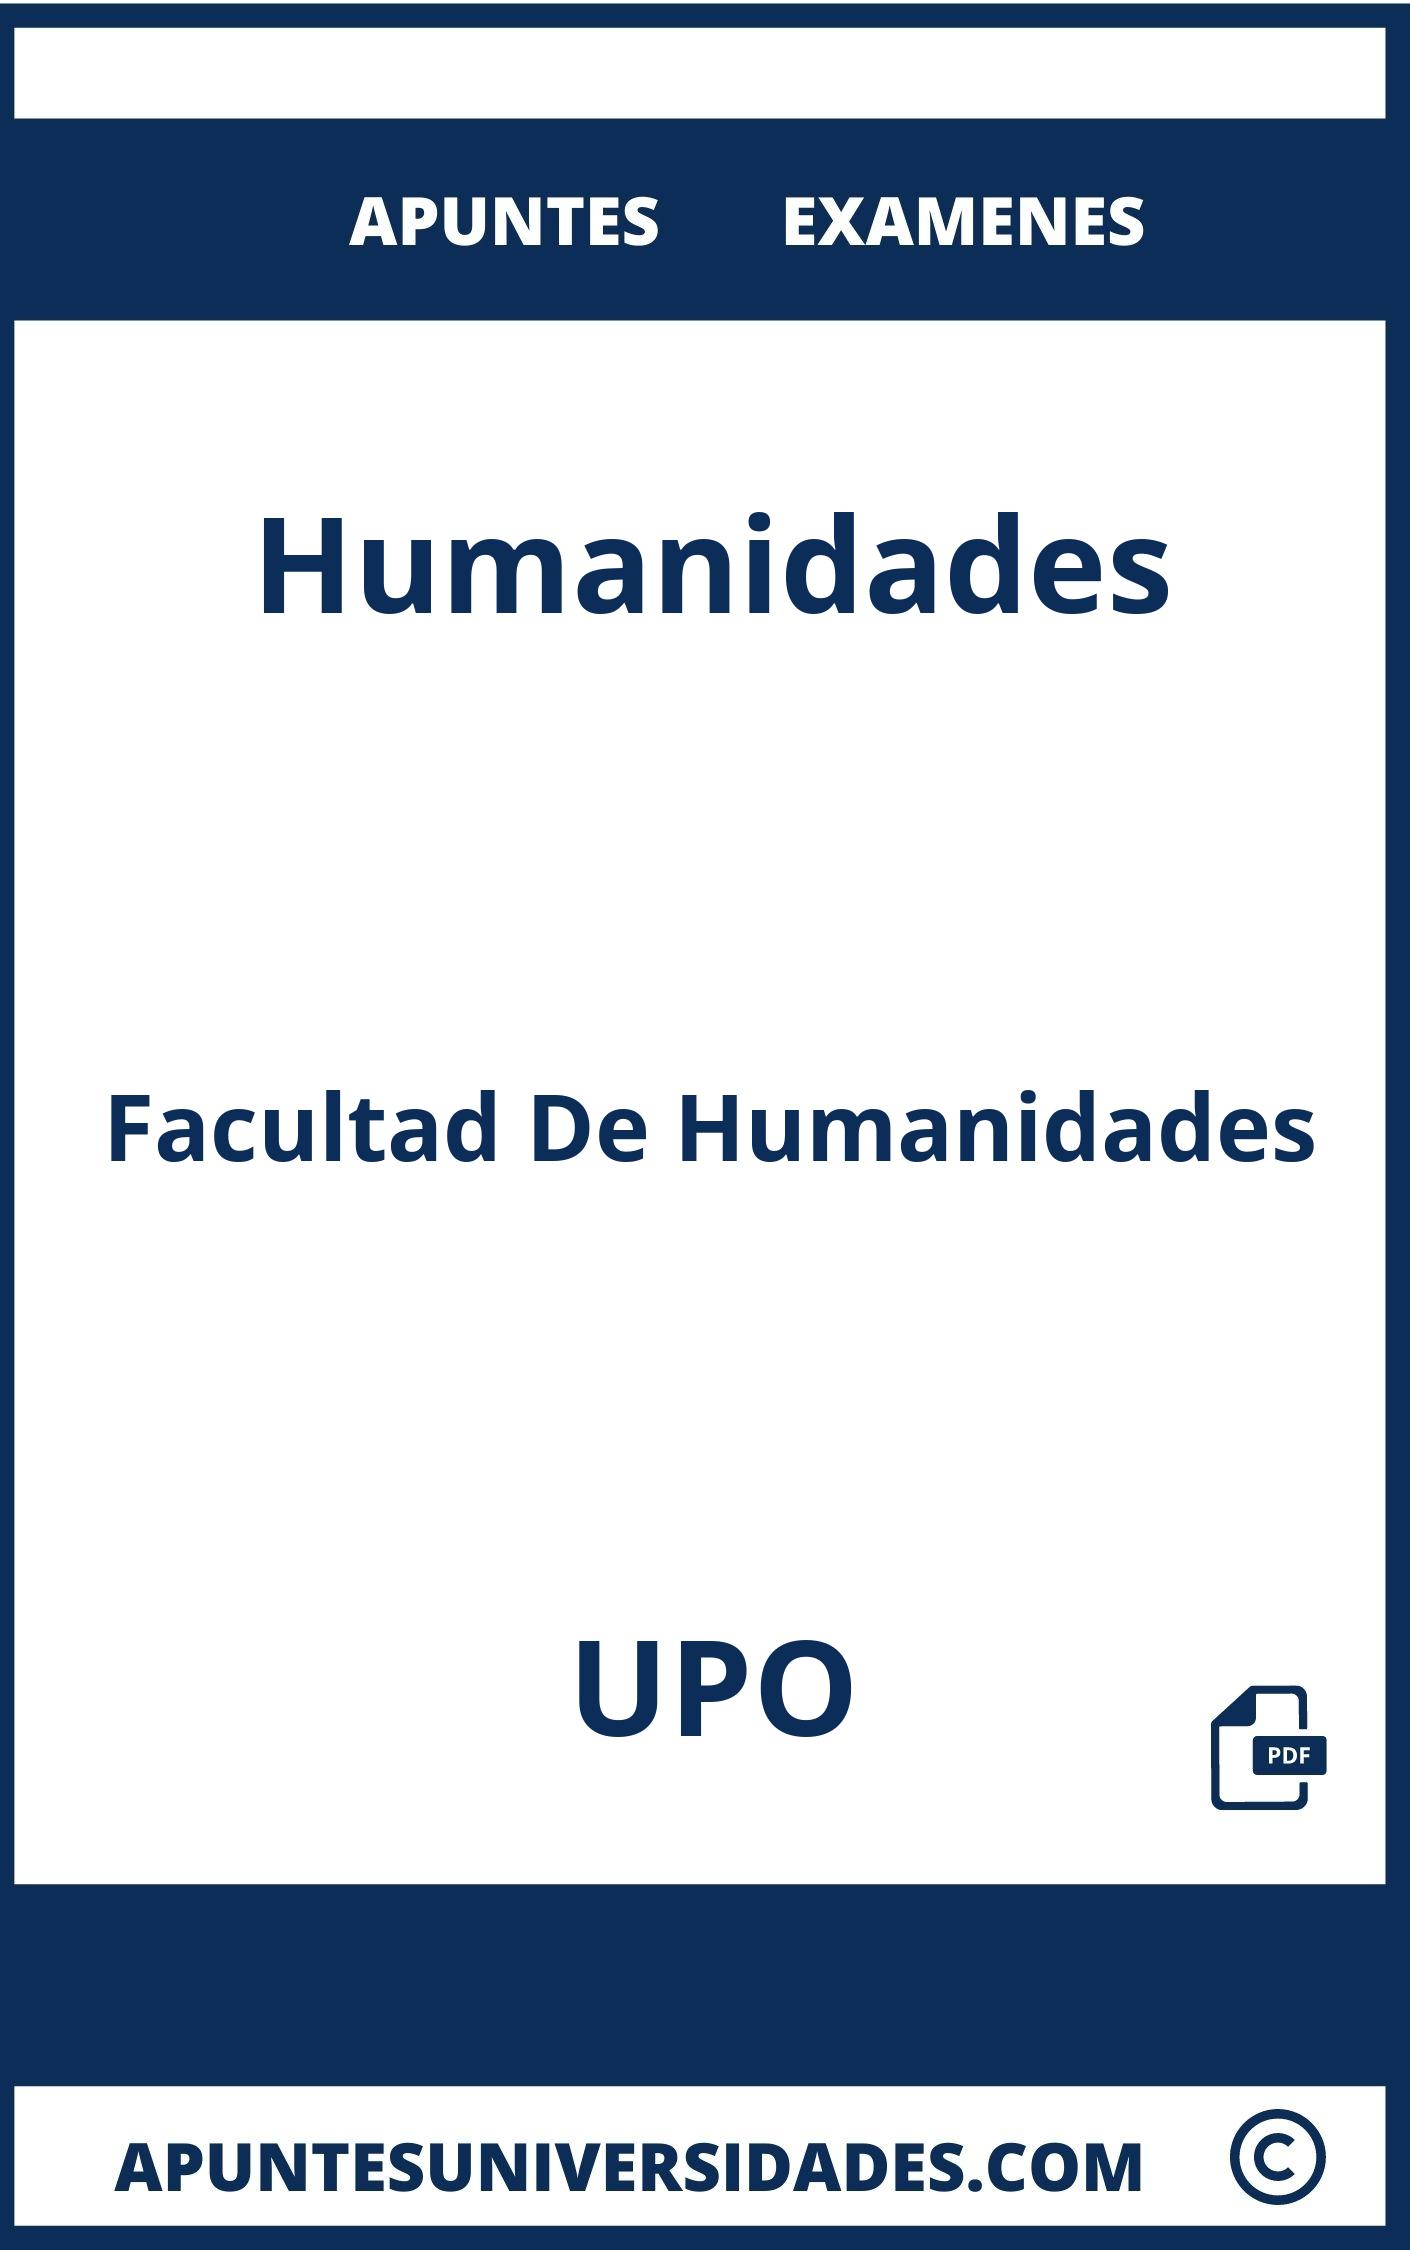 Apuntes y Examenes Humanidades UPO